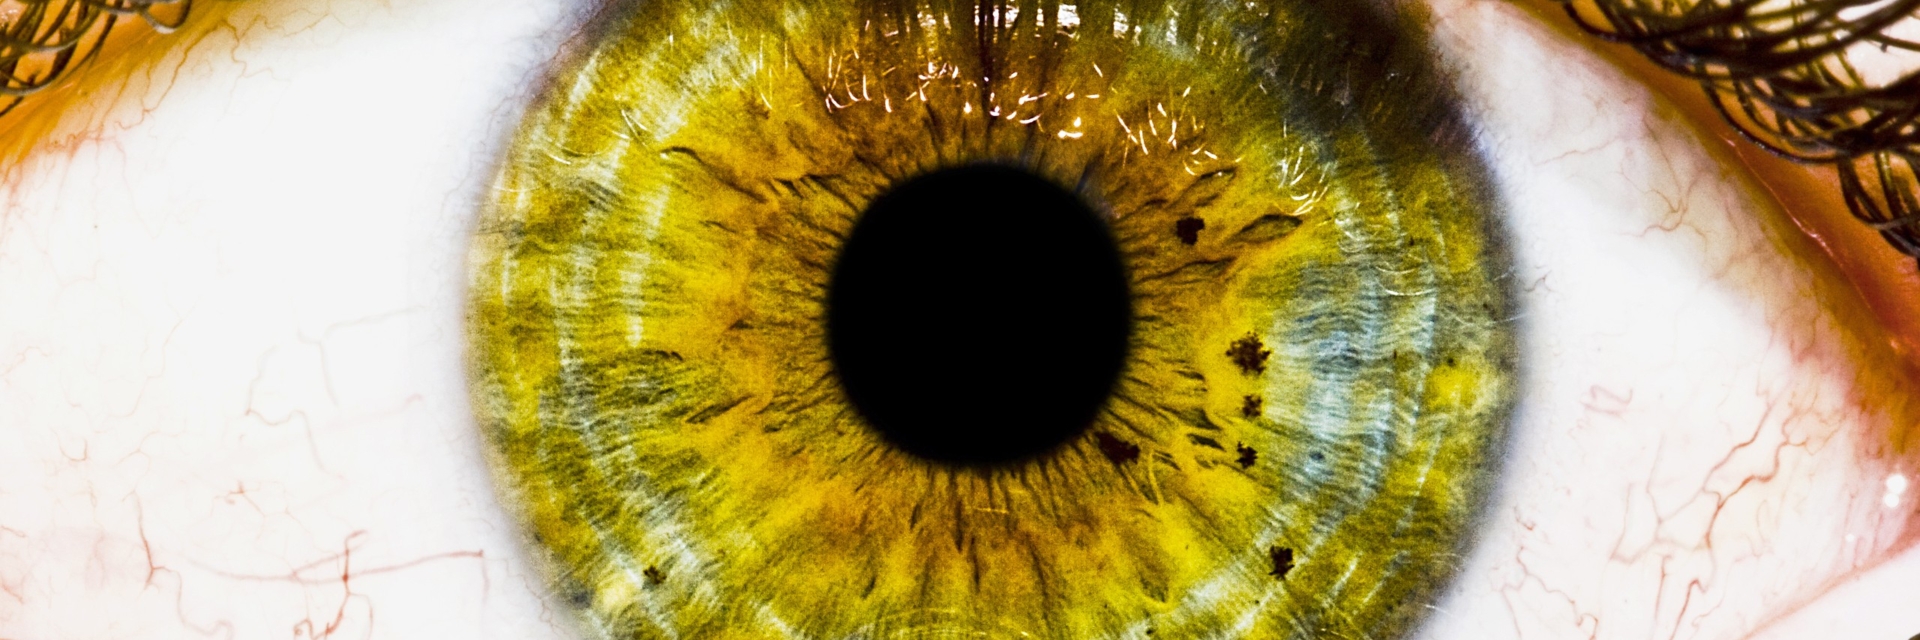 Описание желтых глаз. Зрачок глаза PNG. Коричневые ресницы на глазах.